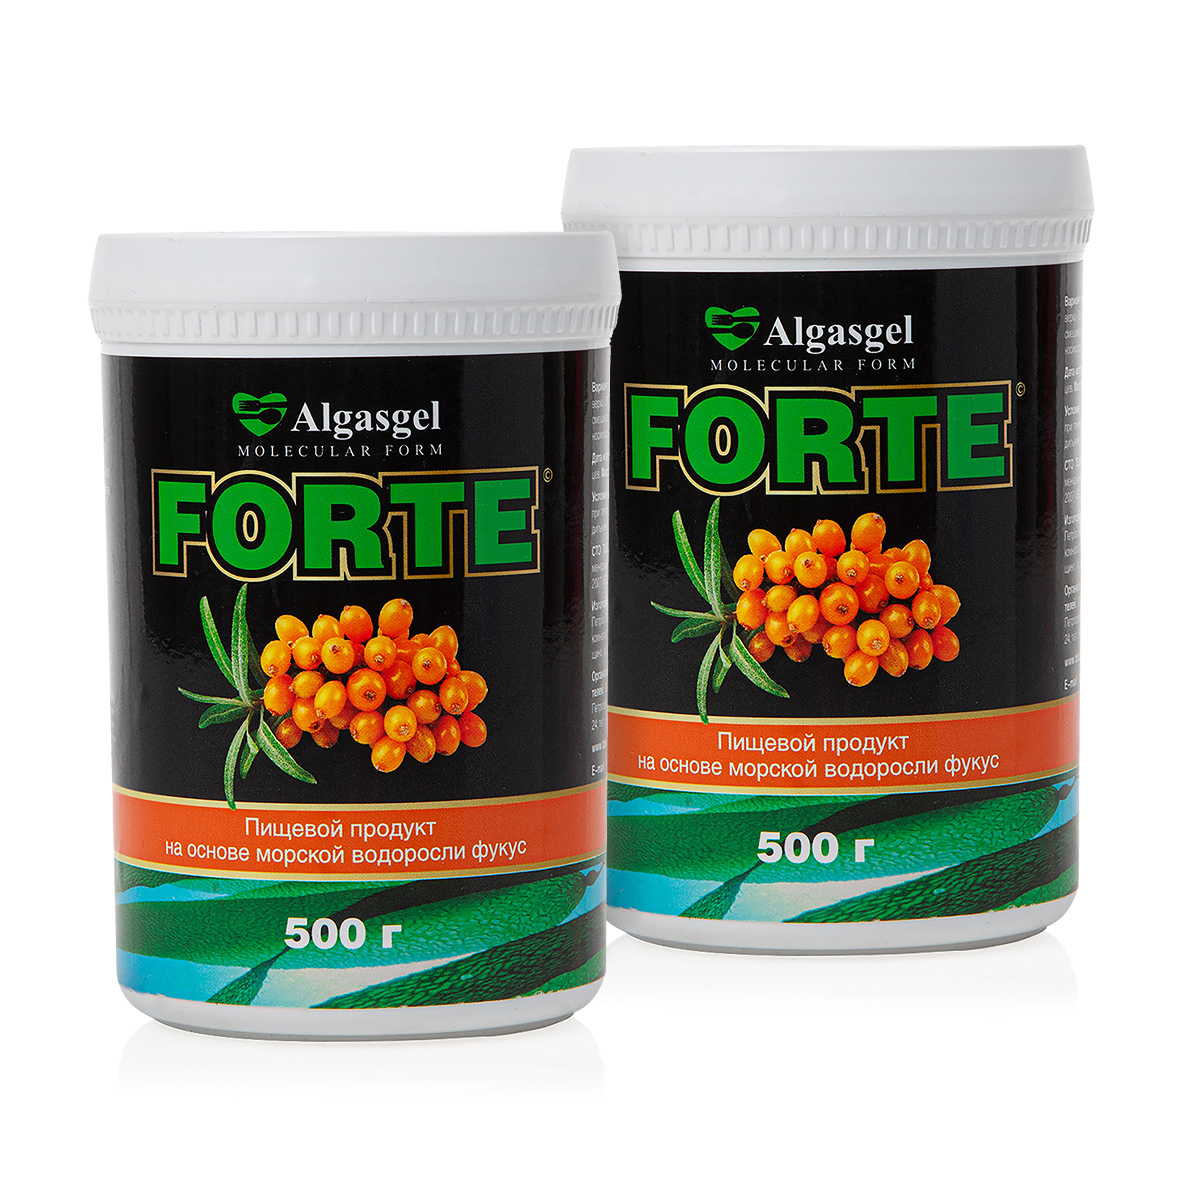 algasgel halal пищевой продукт на основе морской водоросли фукус 500 г Пищевой продукт Algasgel Forte (2 шт. по 500 г) + подарок (500 г)